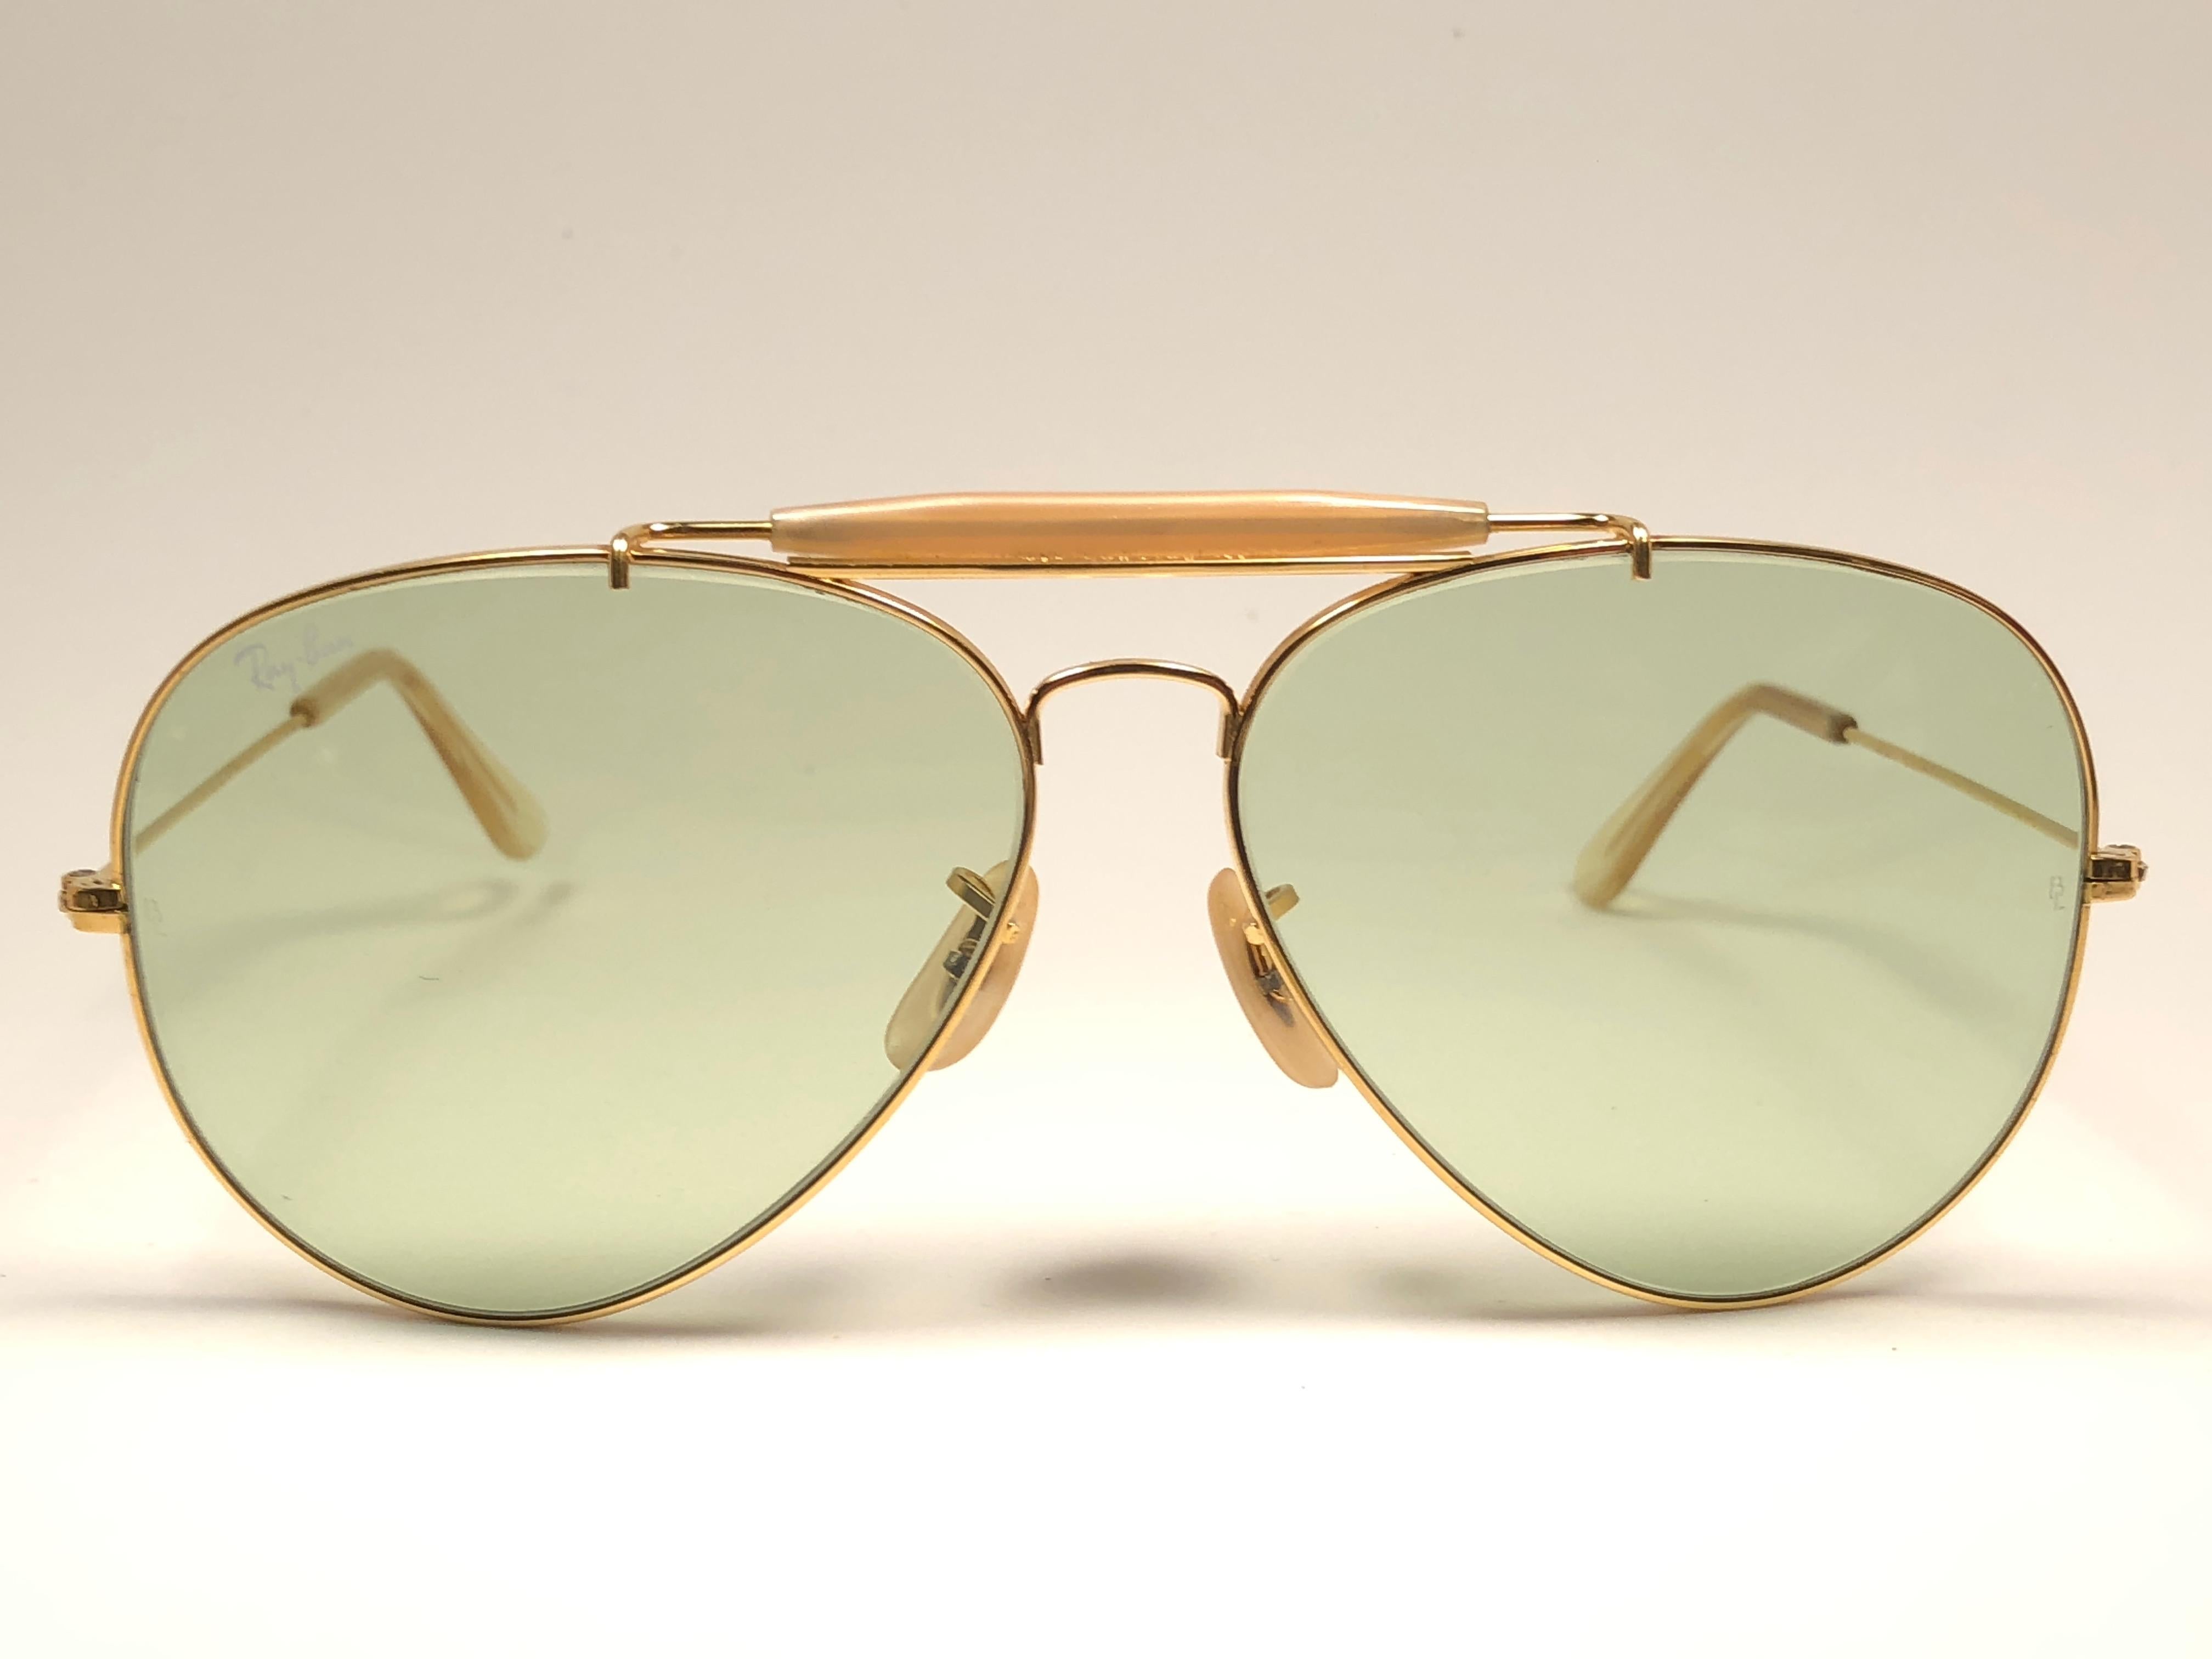 Neuwertige Vintage Ray Ban Aviator Gold 62mm mit grünen Gläsern. B&L in beide Gläser geätzt. Wird mit dem Originaletui Ray Ban B&L geliefert. 

Bitte beachten Sie:: dass dieses Paar aufgrund der fast 40-jährigen Lagerung leichte Gebrauchsspuren